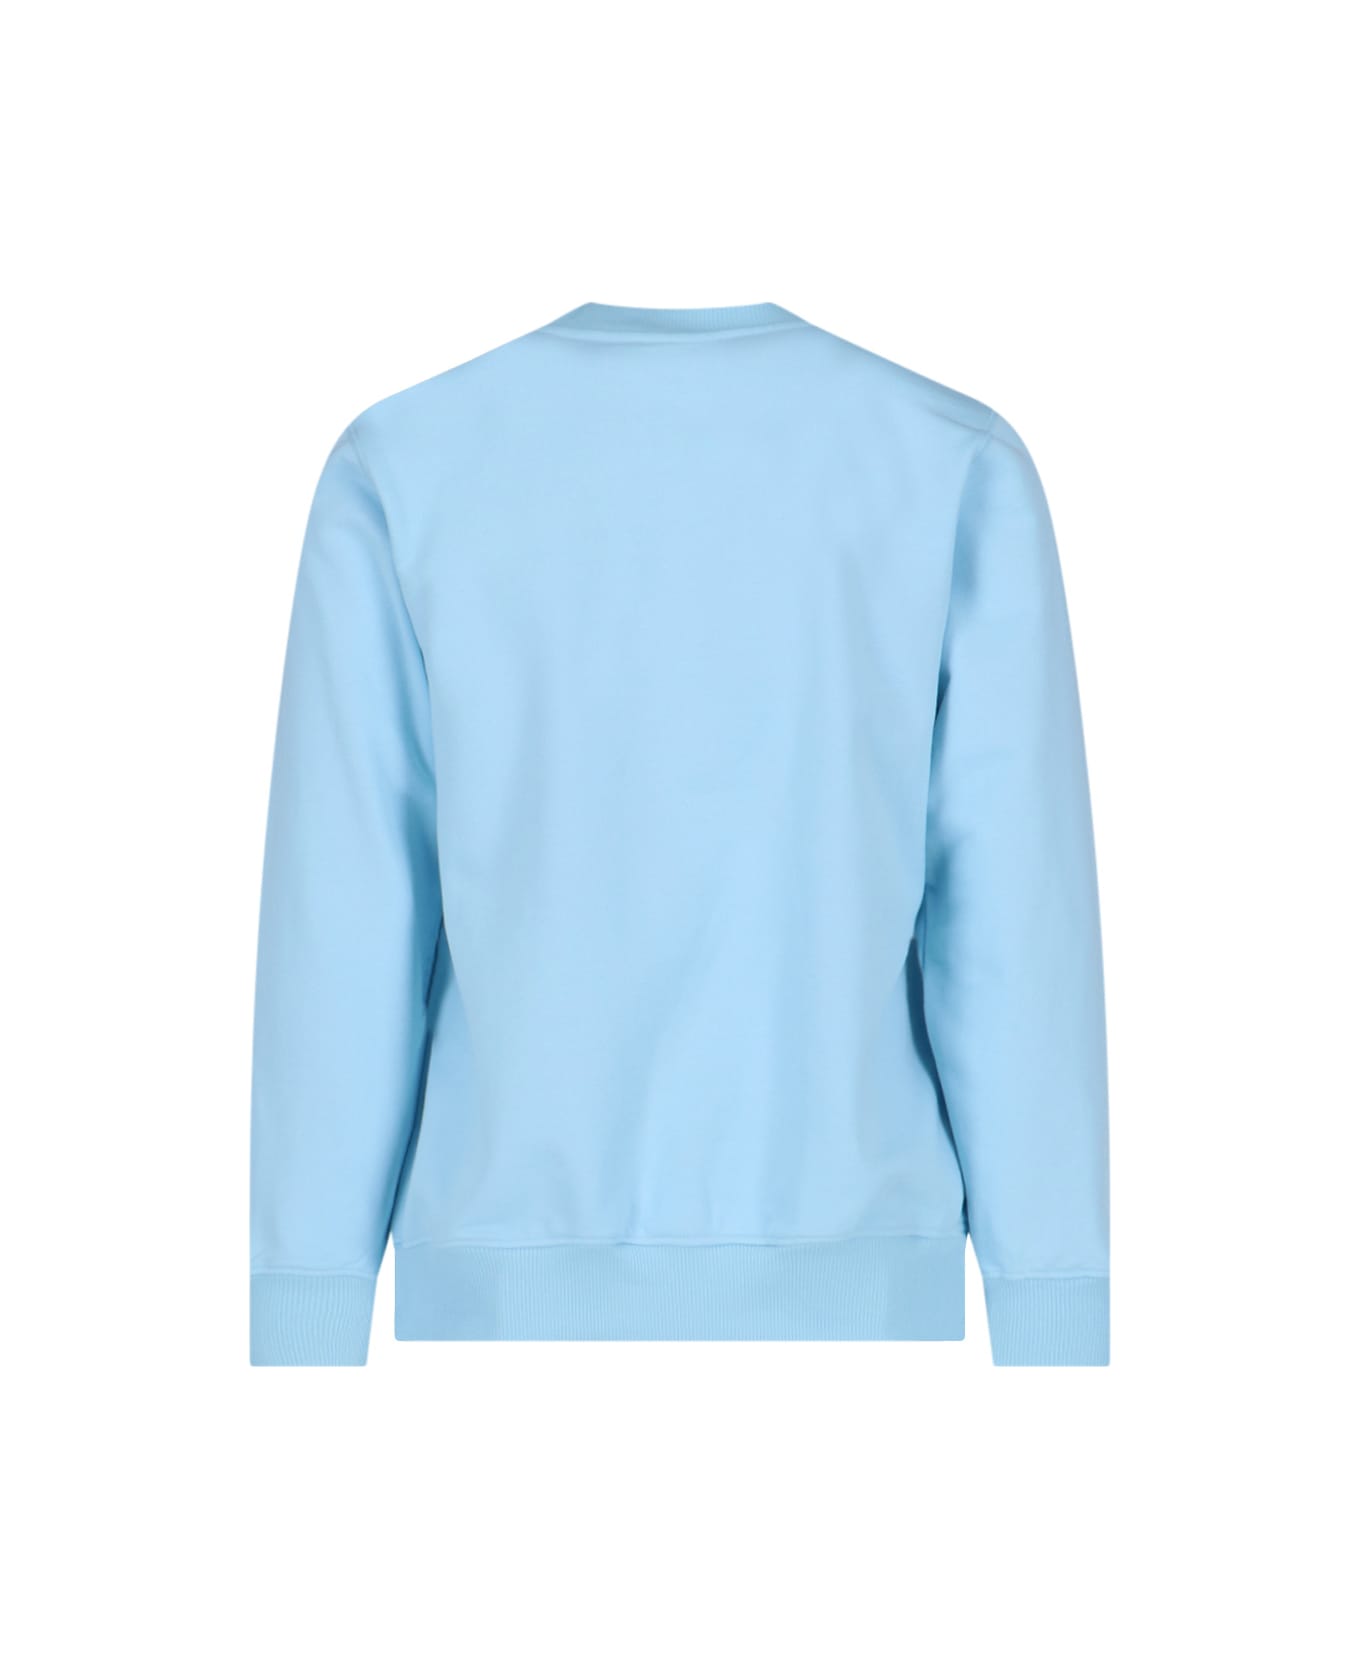 Casablanca Sweater - Light blue フリース